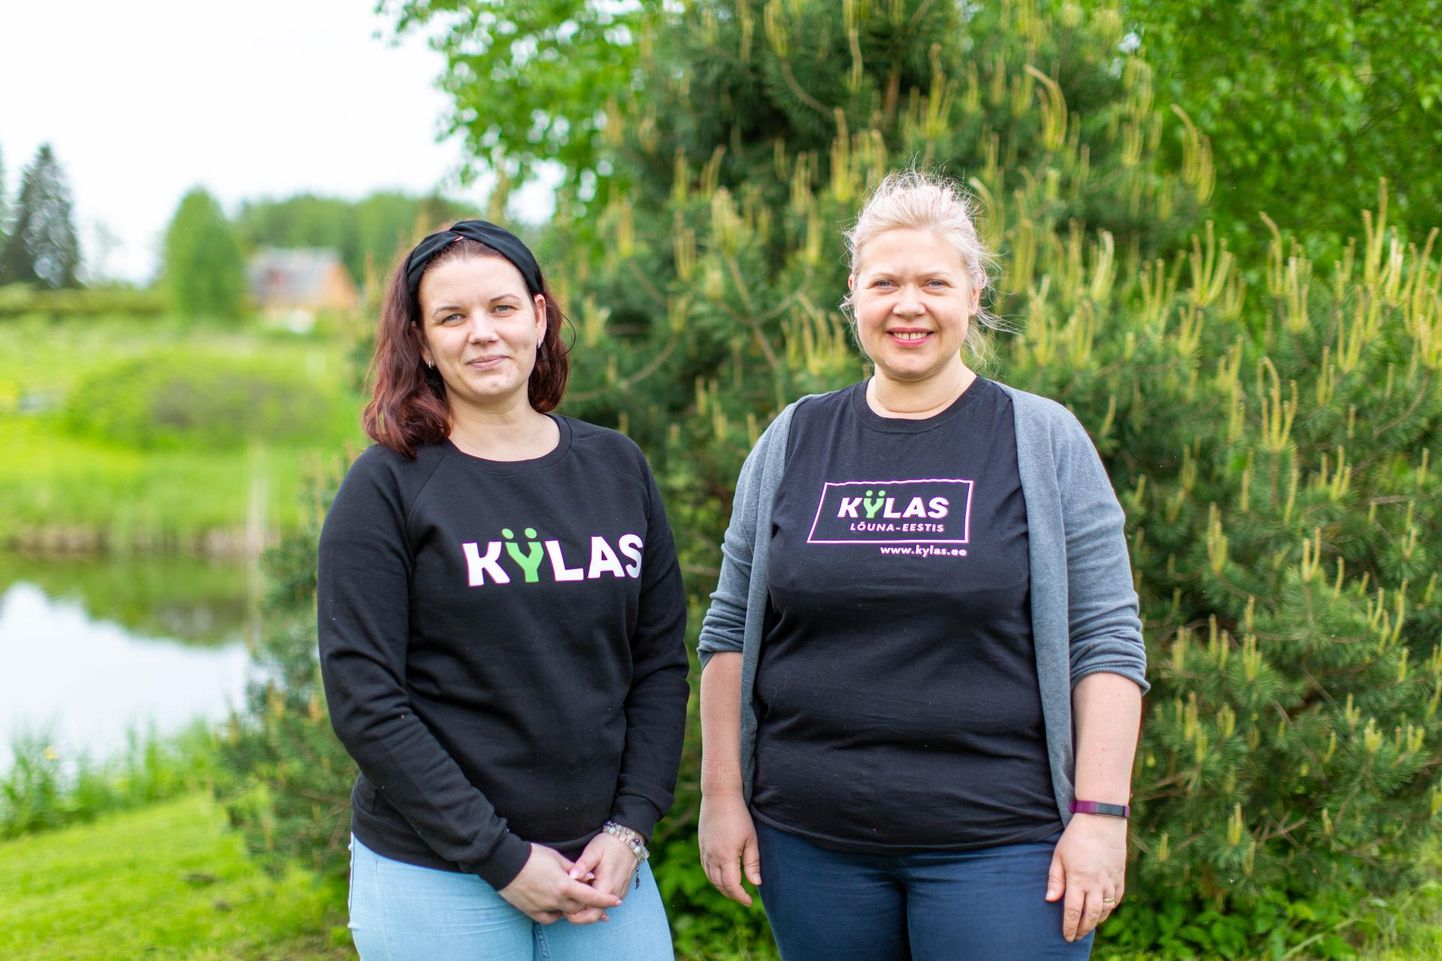 Portaali kylas.ee idee autorid on Võrumaa arenduskeskuse töötajad Kadri Moppel (vasakul) ja Aigi Young. Nende eesmärk on pakkuda huvilistele ehedaid maaelukogemusi.